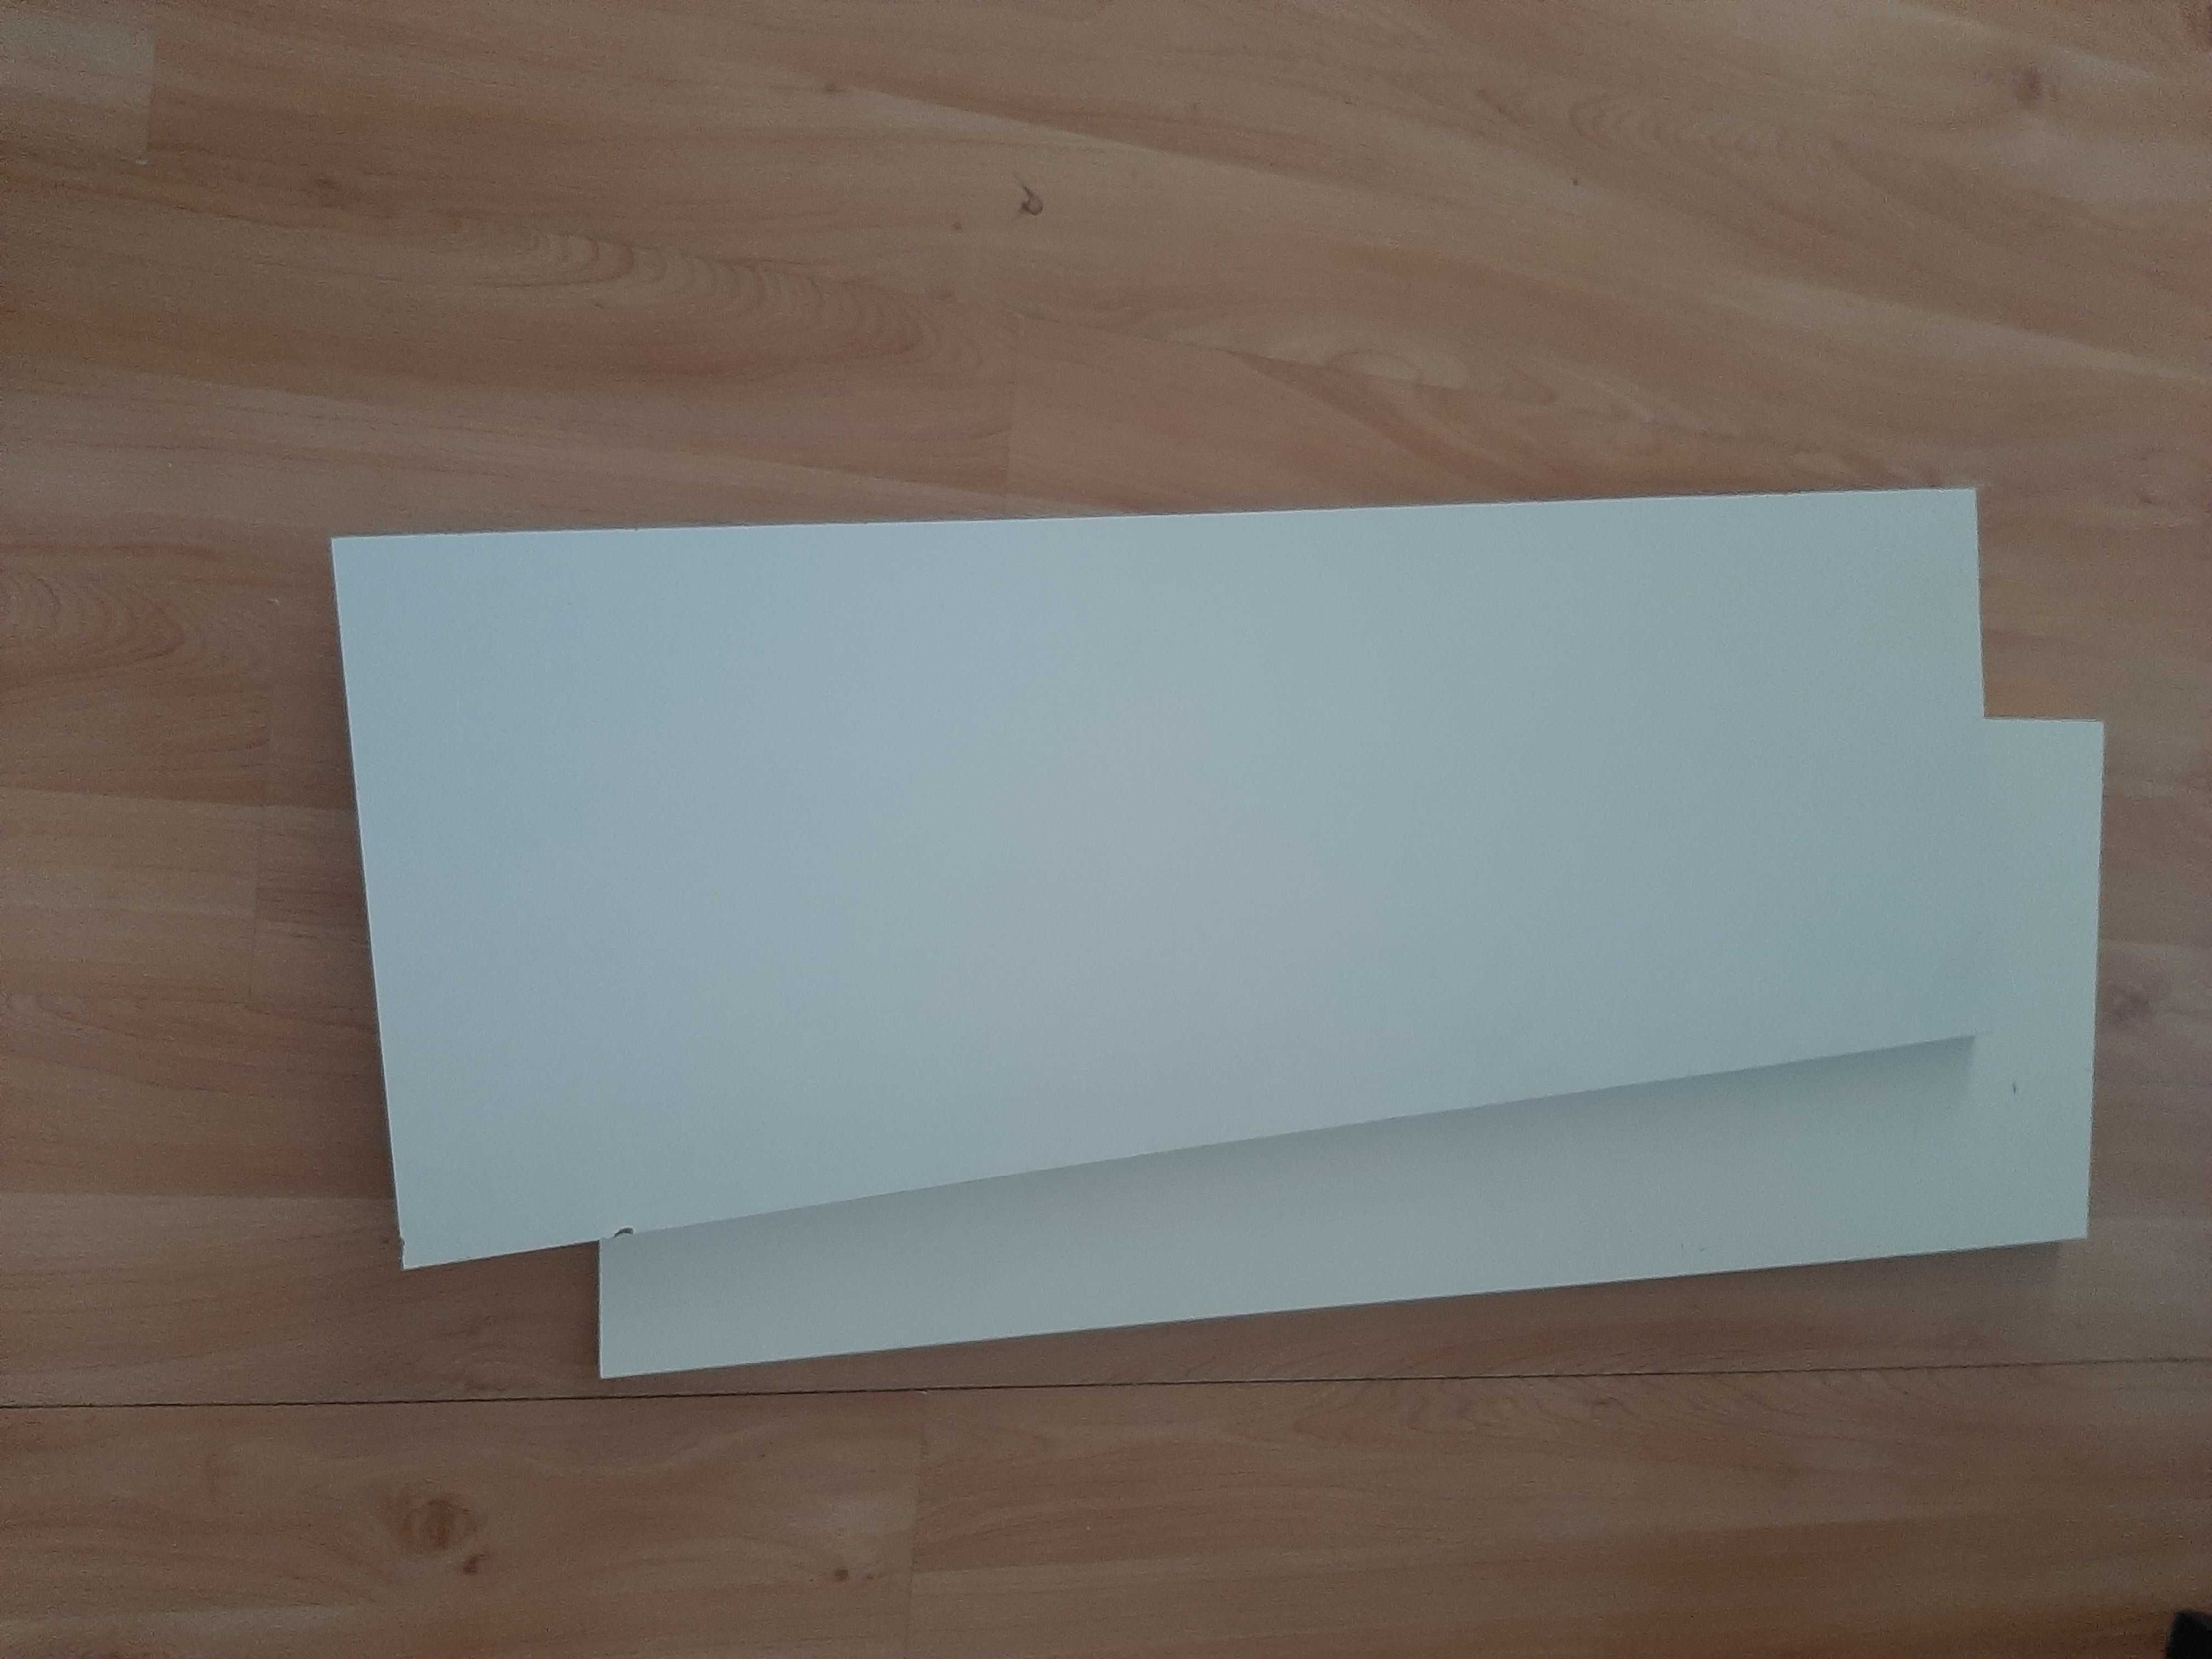 Sprzedam 2 półki Ikea komplement, białe 100x35 cm